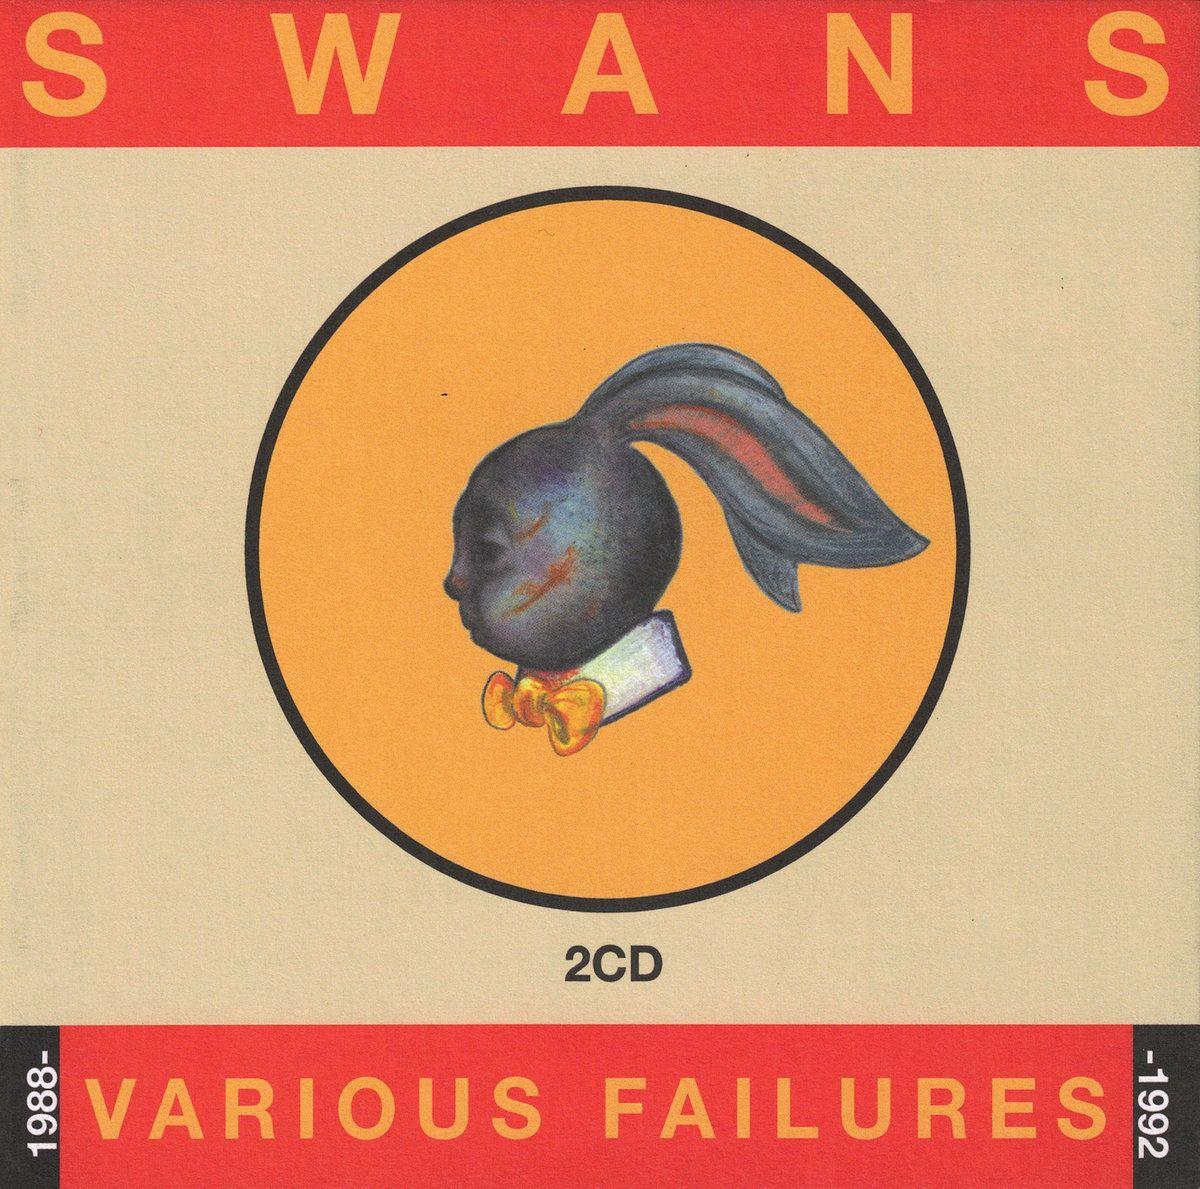 Swans with a Sun Logo - God Damn The Sun